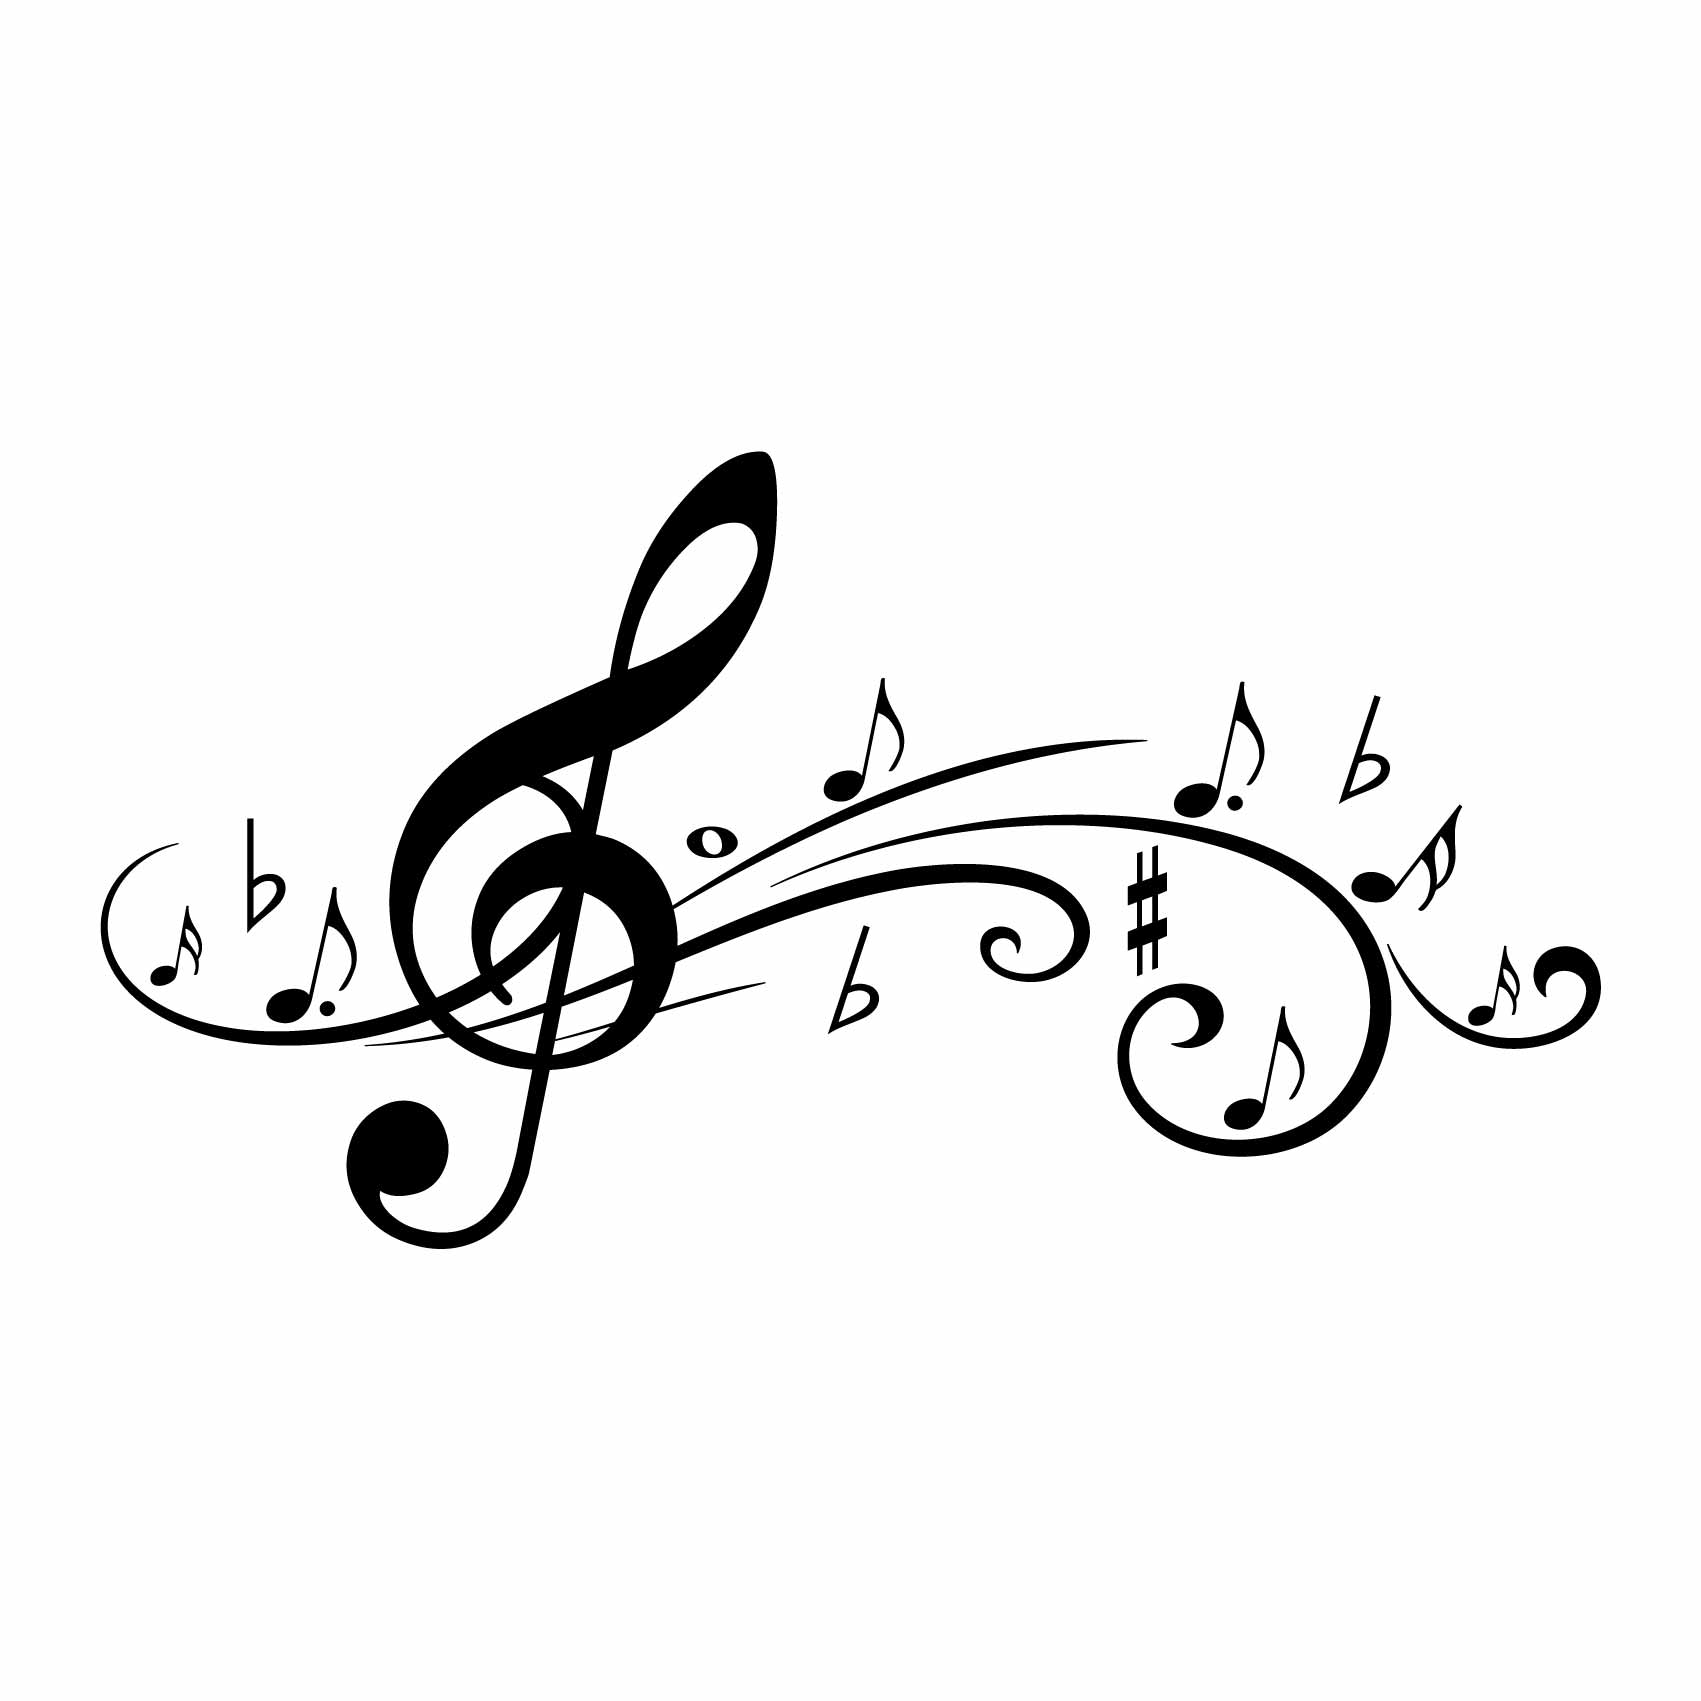 https://media.cdnws.com/_i/61411/1320/3090/23/stickers-muraux-notes-de-musique-ref6musique-autocollant-muraux-musique-sticker-mural-musical-note-notes-deco-salon-chambre-adulte-ado-enfant-2.jpeg